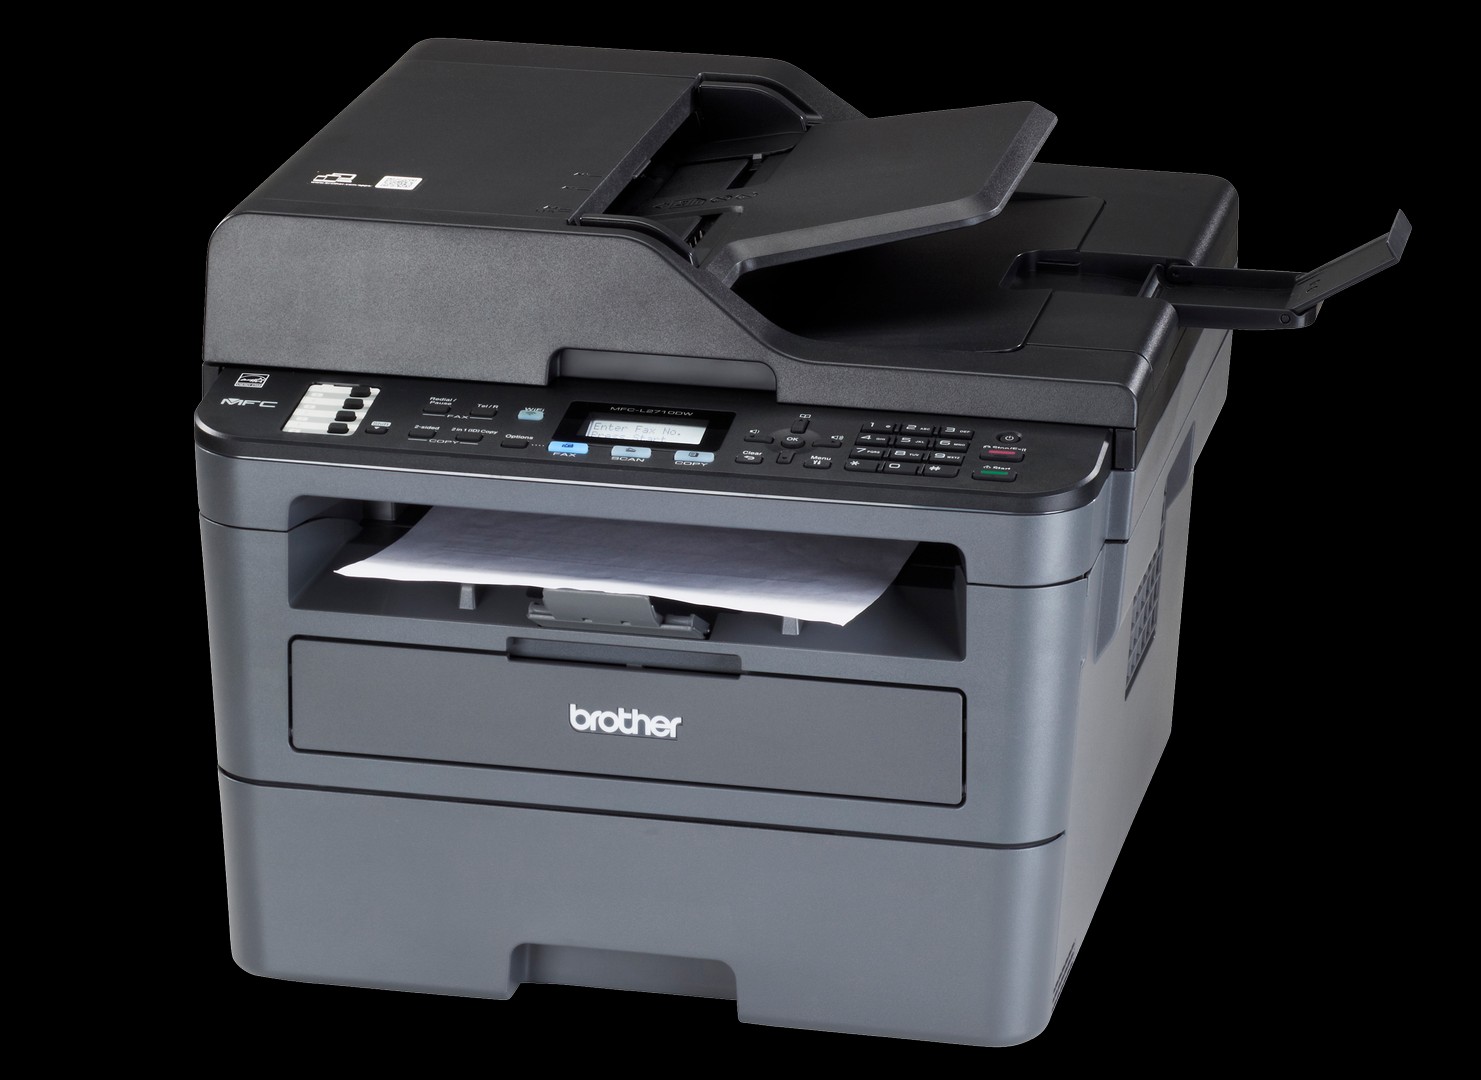 impresoras y scanners - MULTIFUNCIONAL  BROTHER LASER MFCL2710DW  BLANCO Y NEGRO  ESCANER,COPIADORA,IMPR 1